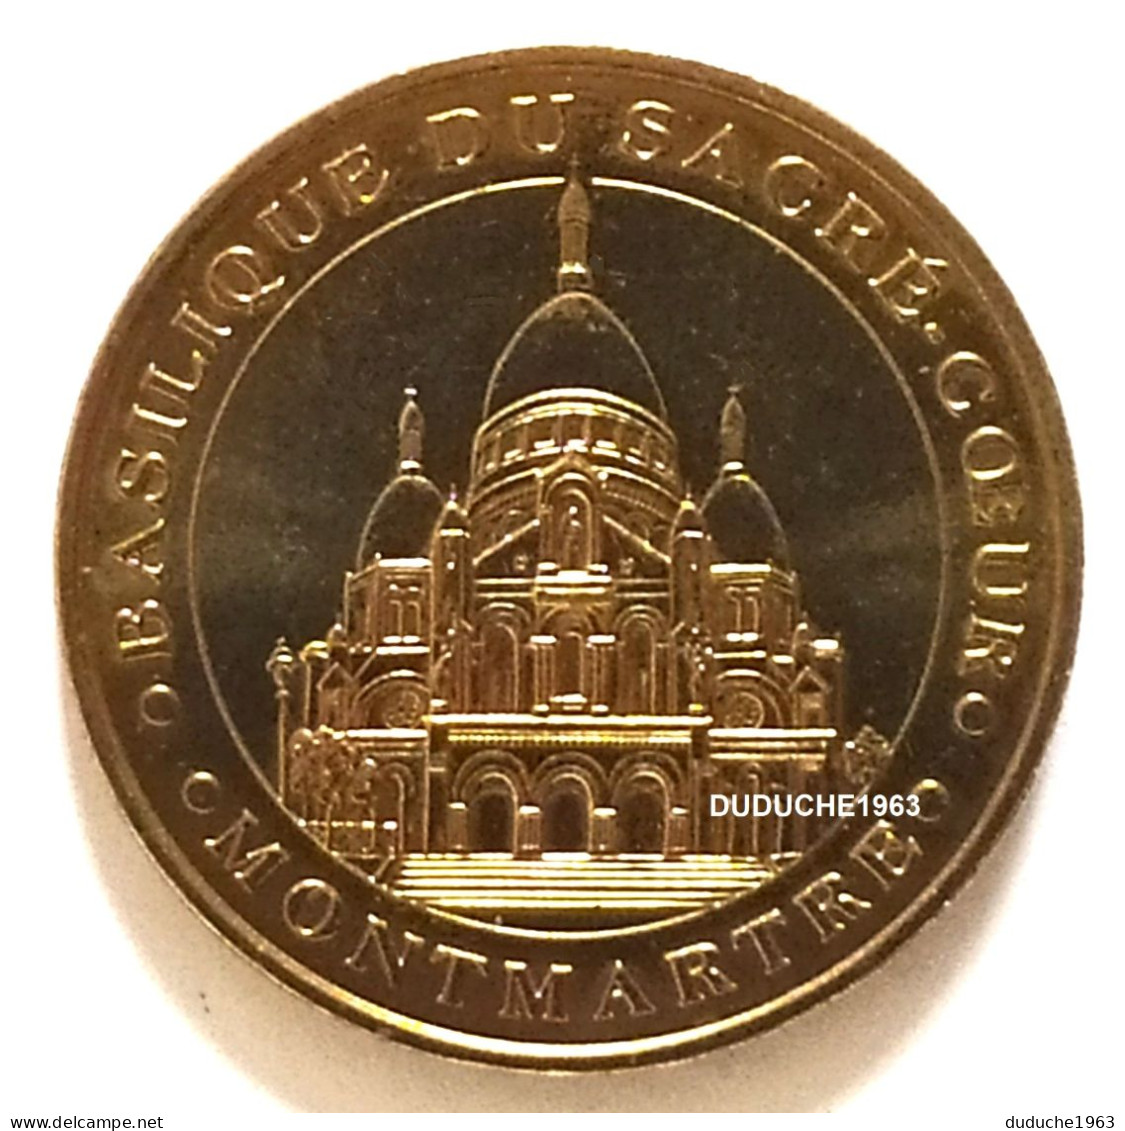 Monnaie De Paris 75.Paris - Basilique Sacré Cœur 2006 - 2006